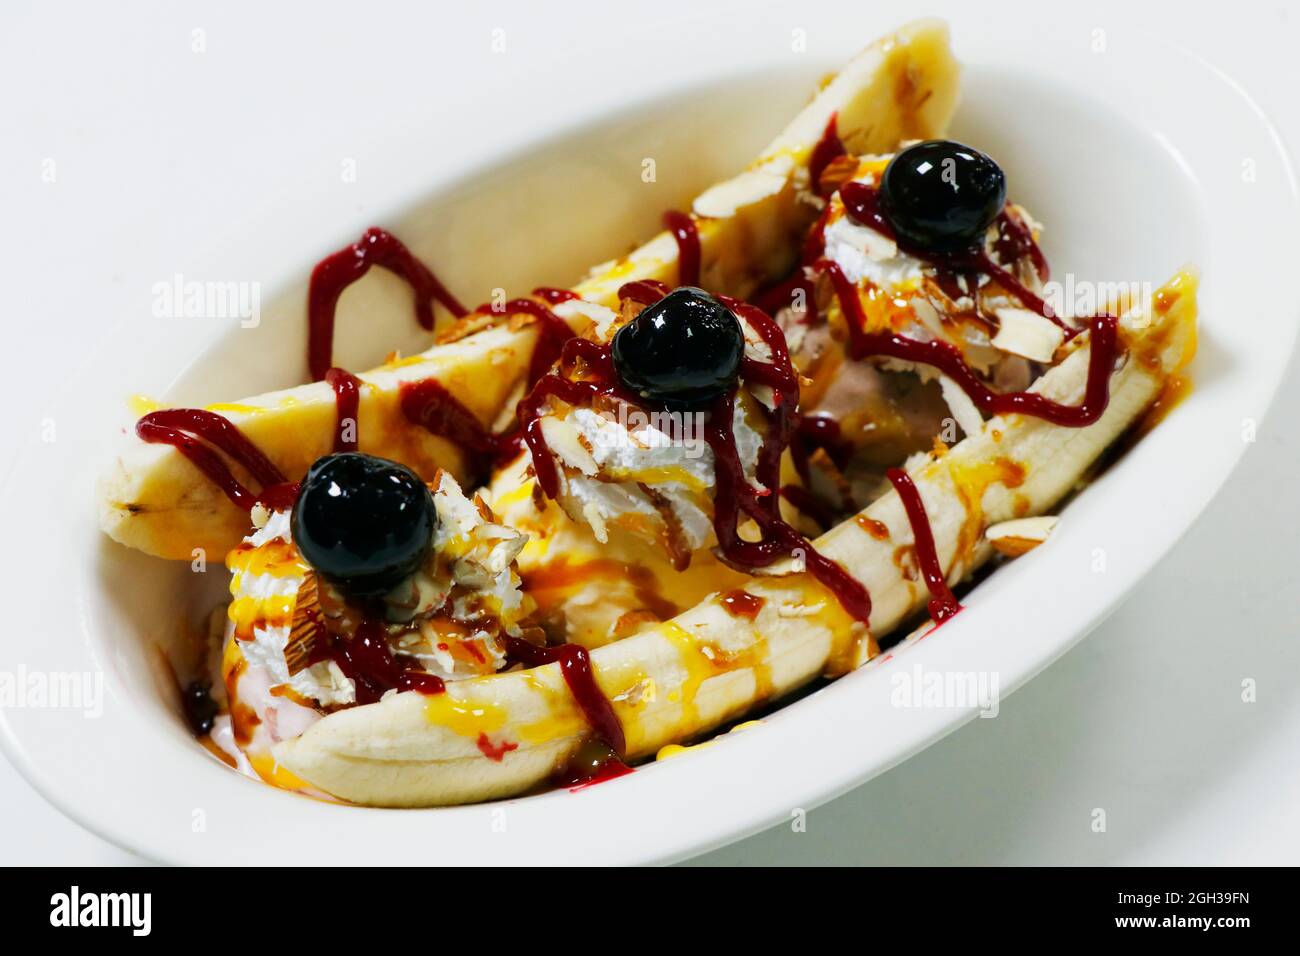 la banane est coupée avec des crèmes glacées, des cerises et de la sauce caramel à la framboise Banque D'Images